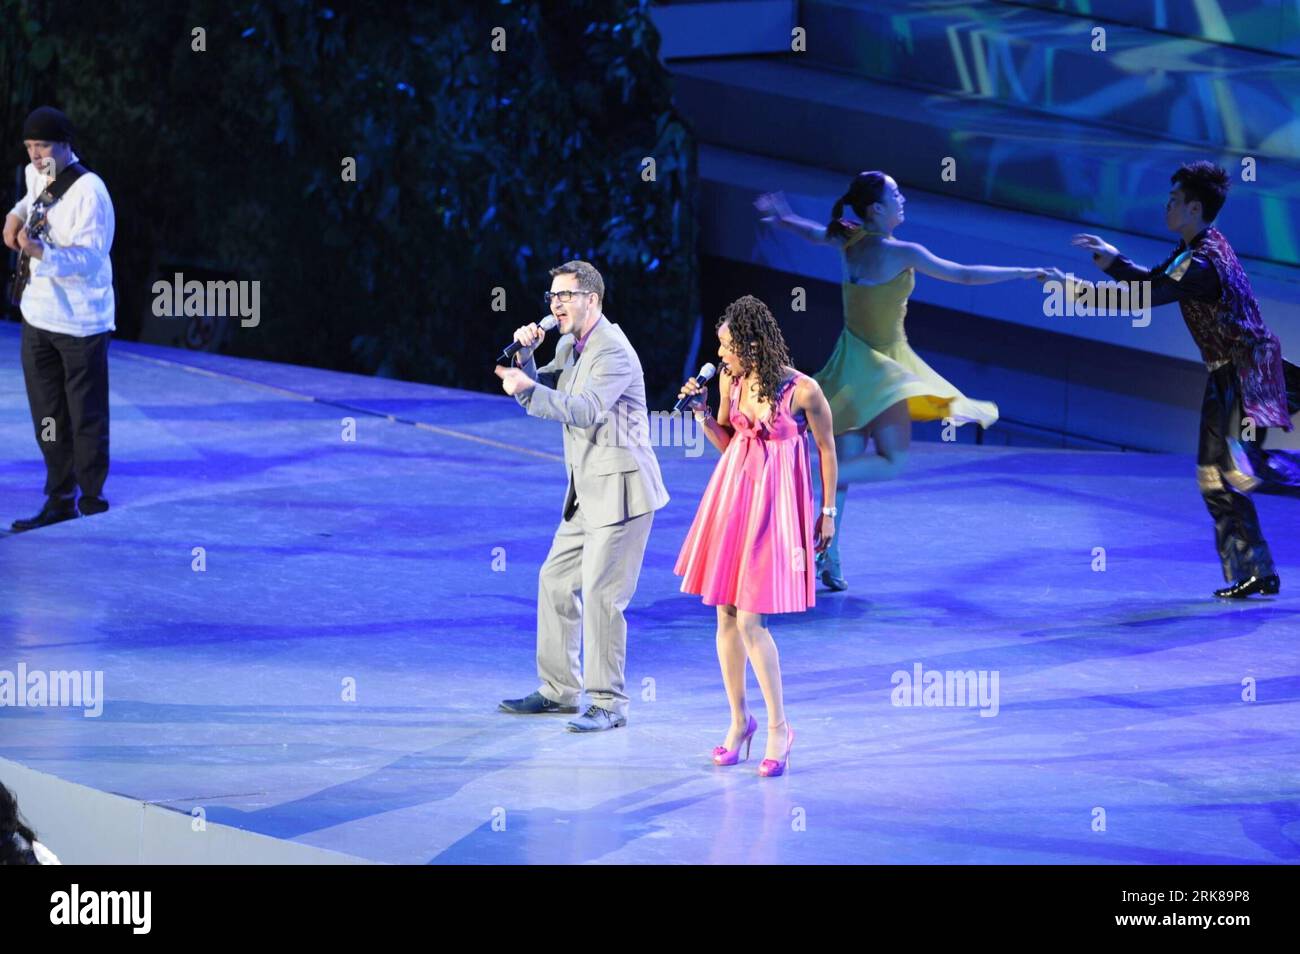 Bildnummer : 54000204 Datum : 30.04.2010 Copyright : imago/Xinhua (100430) -- SHANGHAI, 30 avril 2010 (Xinhua) -- les chanteurs américains Siedah Garrett (à droite) et Jonathan Buck chantent la chanson Better City, Better Life lors de la cérémonie d'ouverture de l'exposition universelle de Shanghai 2010 à l'Expo Cultural Center de Shanghai, dans l'est de la Chine, le 30 avril 2010. (Xinhua/Chen Shugen) (kh) WORLD EXPO-OUVERTURE-PERFORMANCE (CN) PUBLICATIONxNOTxINxCHN Wirtschaft Gesellschaft Expo Shanghai Eröffnung Eröffnungsfeier People Aktion kbdig xng 2010 quer premiumd xint o0 Musik Bildnummer 54000204 Date 30 0 Banque D'Images